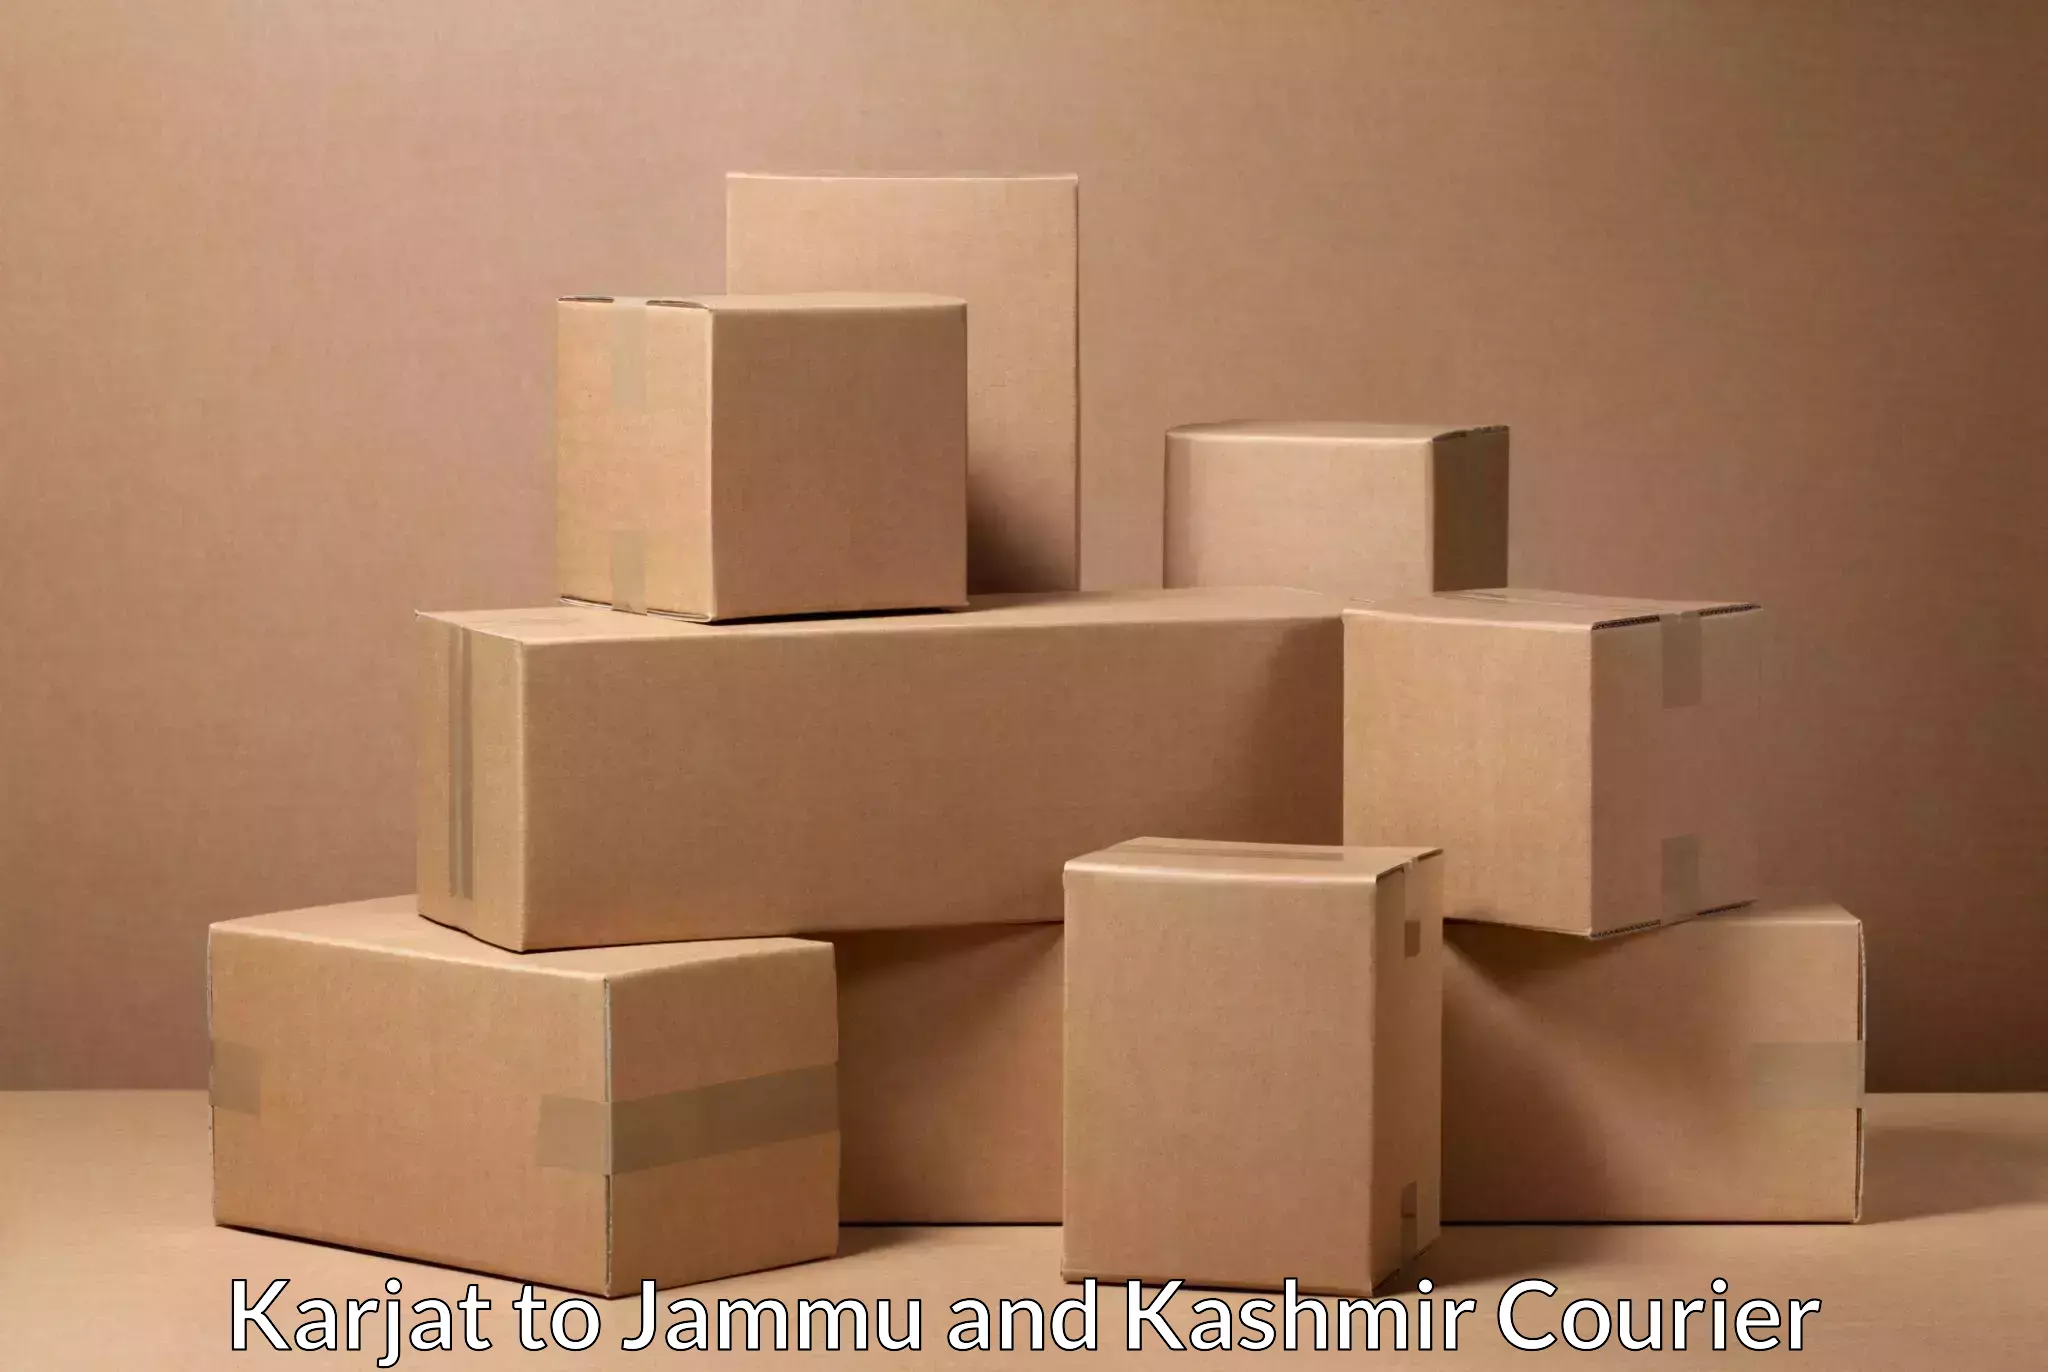 Heavy parcel delivery Karjat to Kishtwar